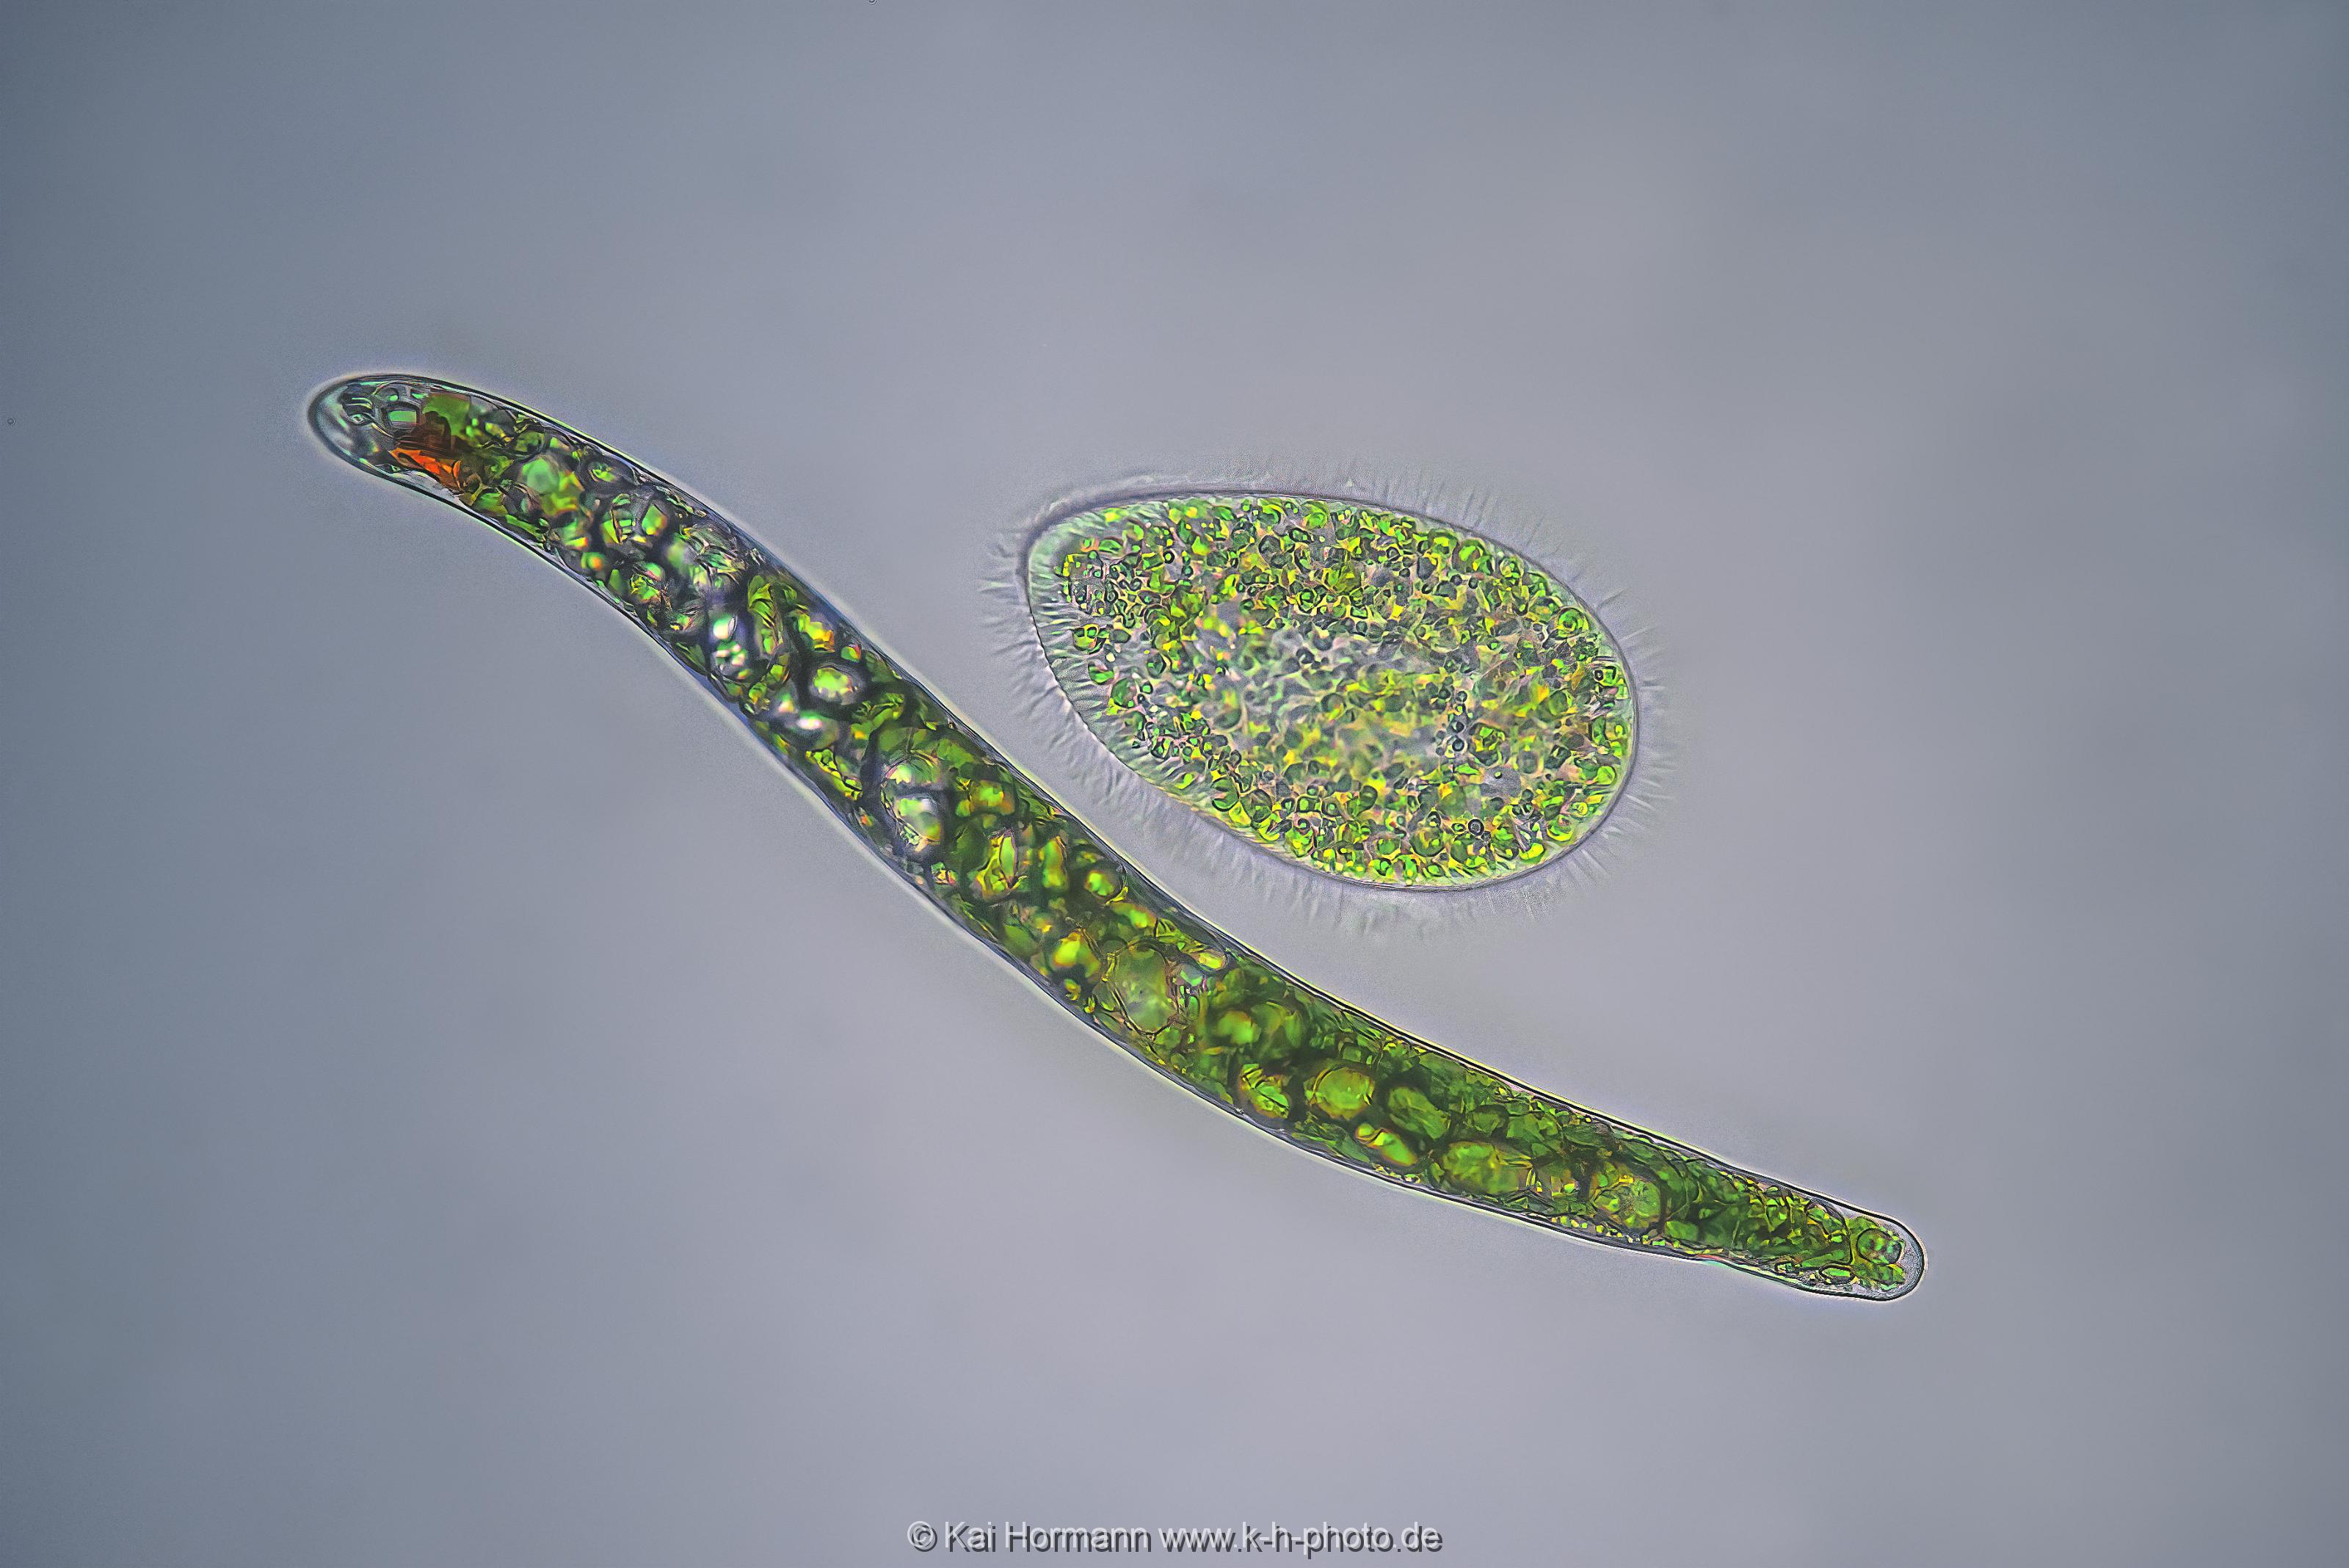 Augenflagellat und Pantoffeltierchen. Mikrofotografie: Mikroskopische Aufnahmen von Einzellern, Algen und Kleinstlebewesen.